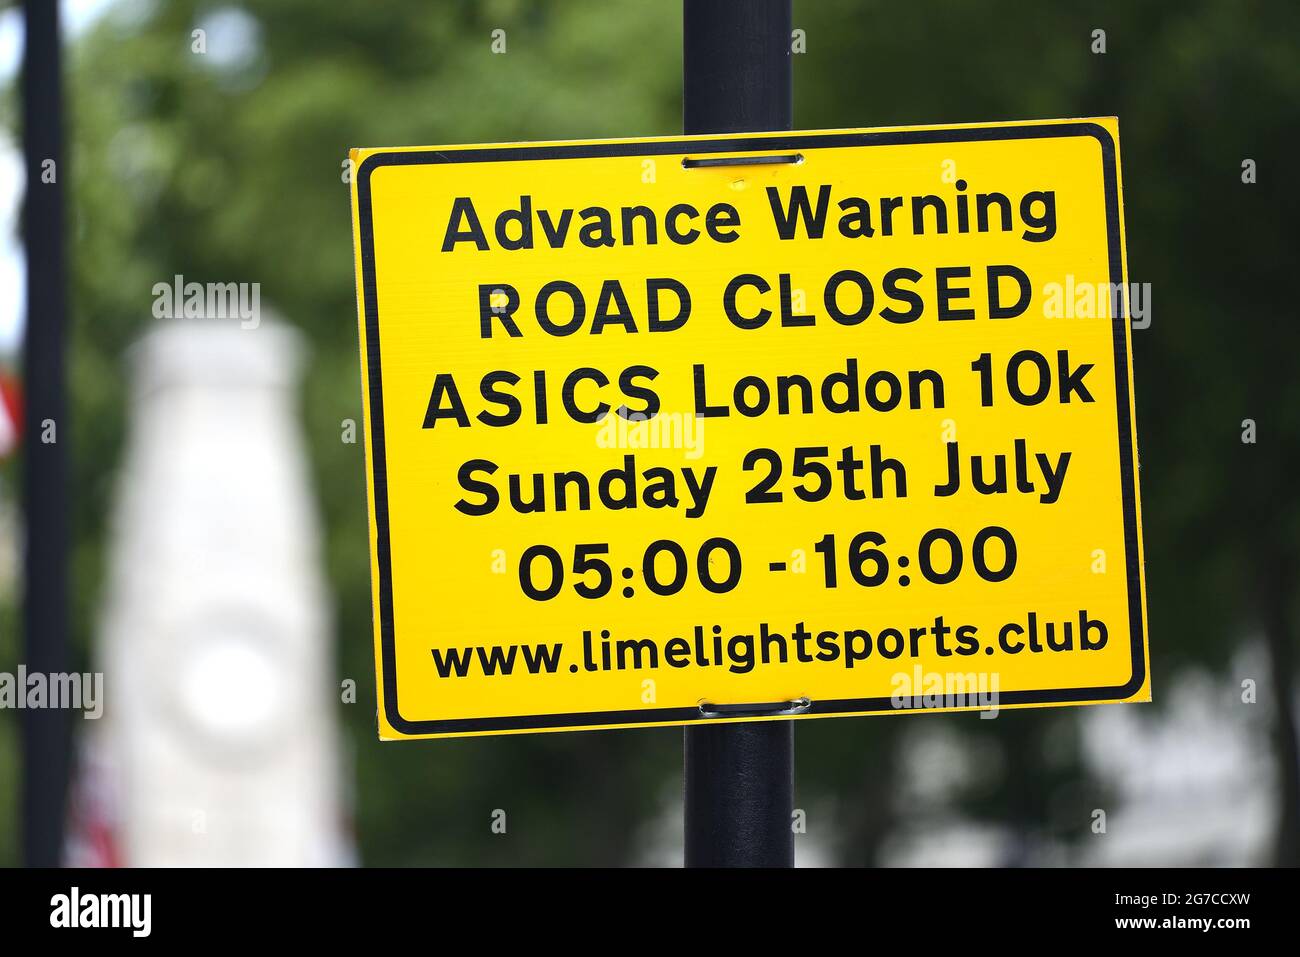 Londra, Inghilterra, Regno Unito. Avviso avanzato di chiusura delle strade nel centro di Londra per un evento sportivo. Whitehall, luglio 2021 Foto Stock